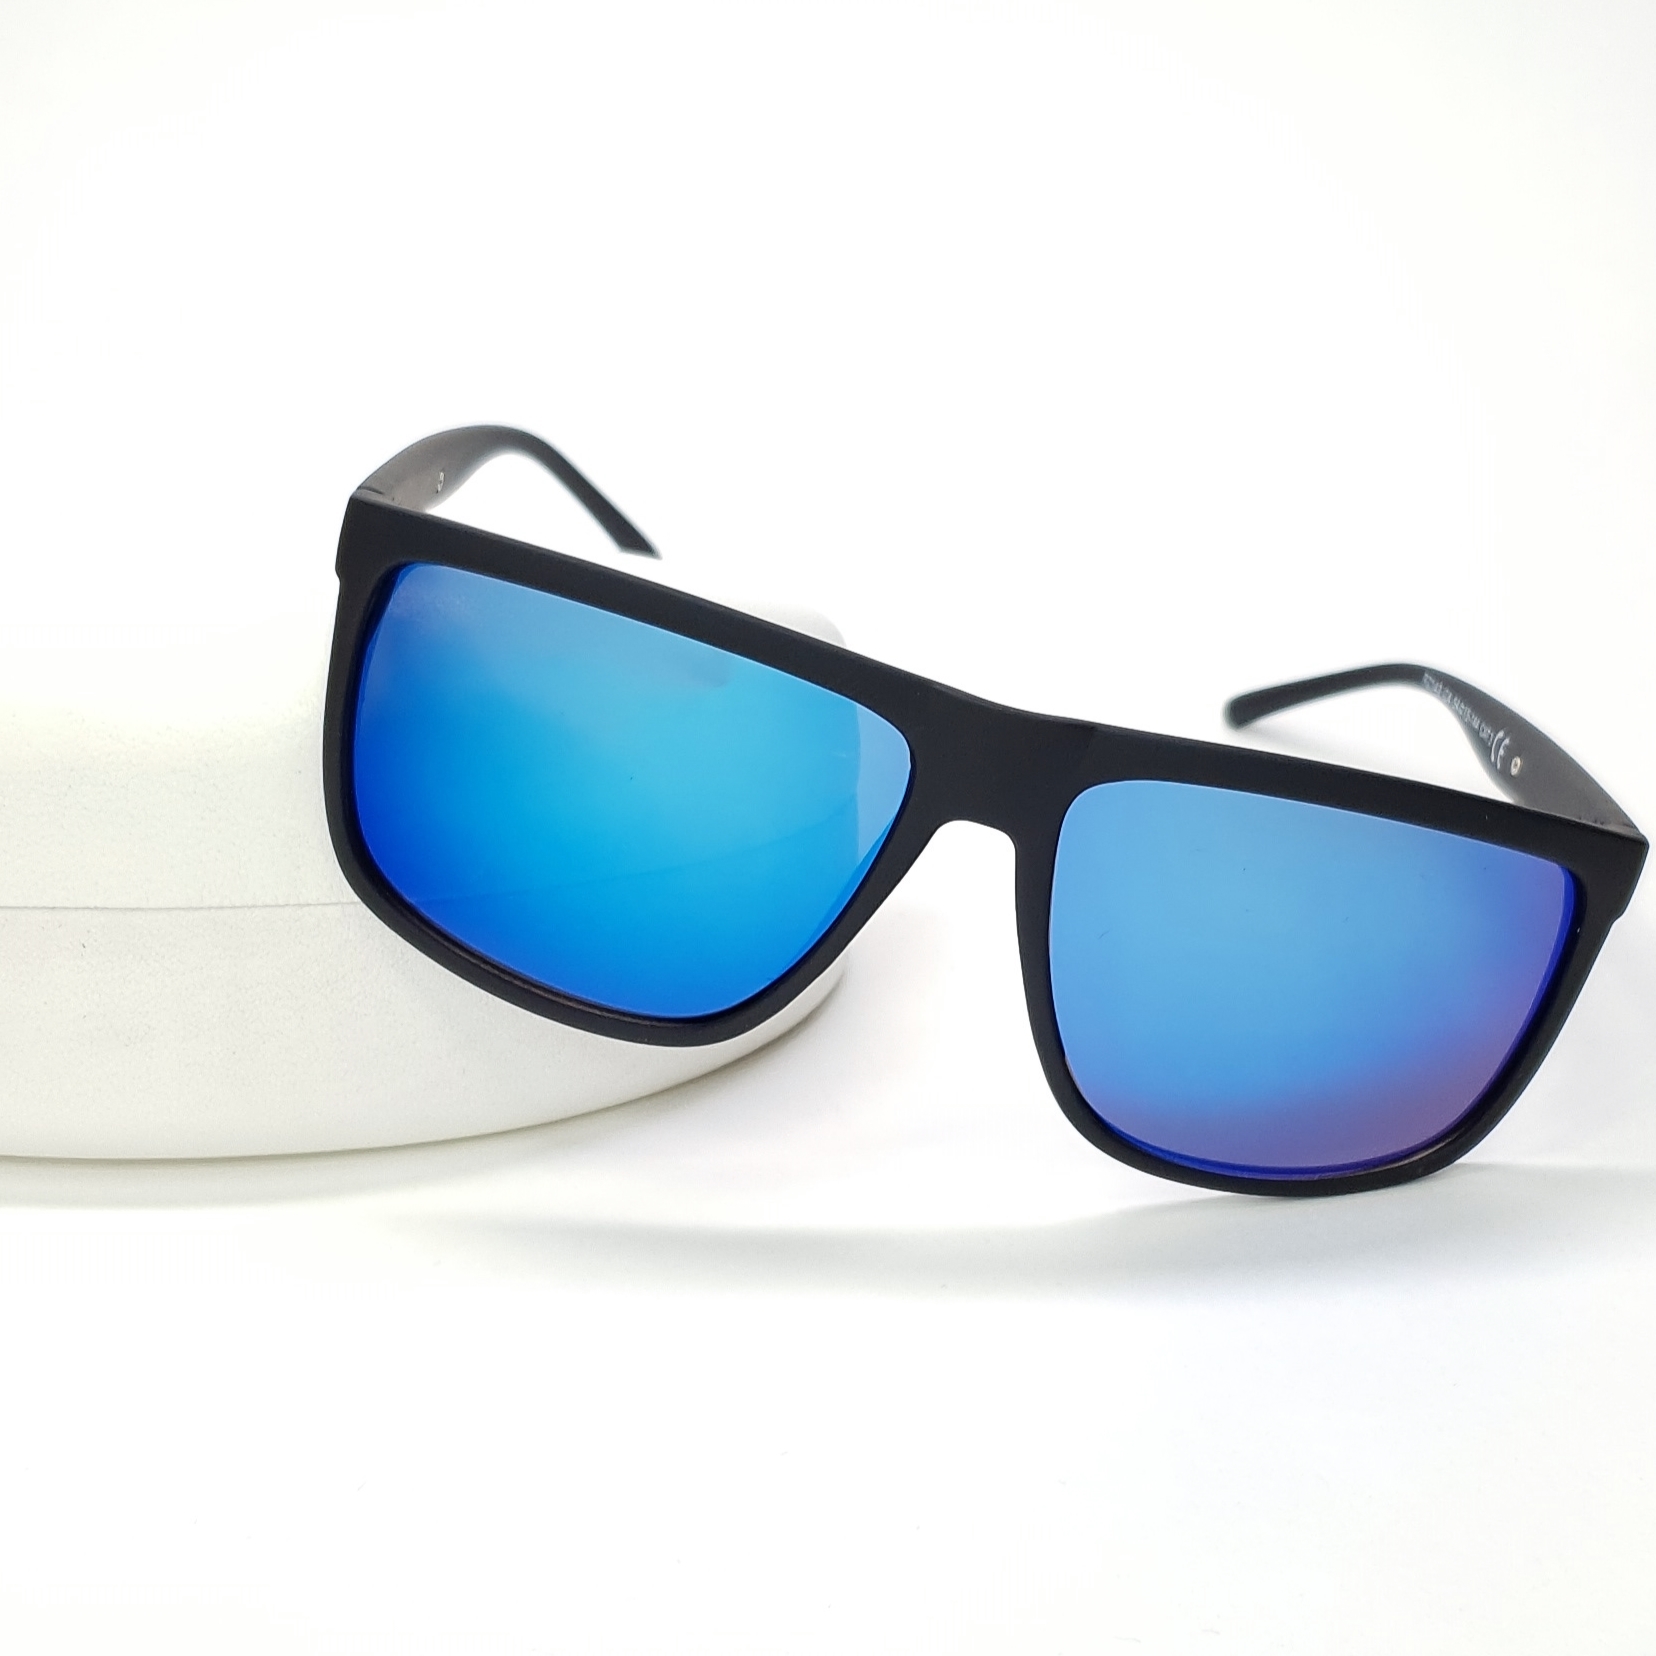 Lero очки солнцезащитные. Солнцезащитные очки. Прямоугольные очки солнцезащитные. Синие солнцезащитные очки. Двойные очки солнцезащитные.